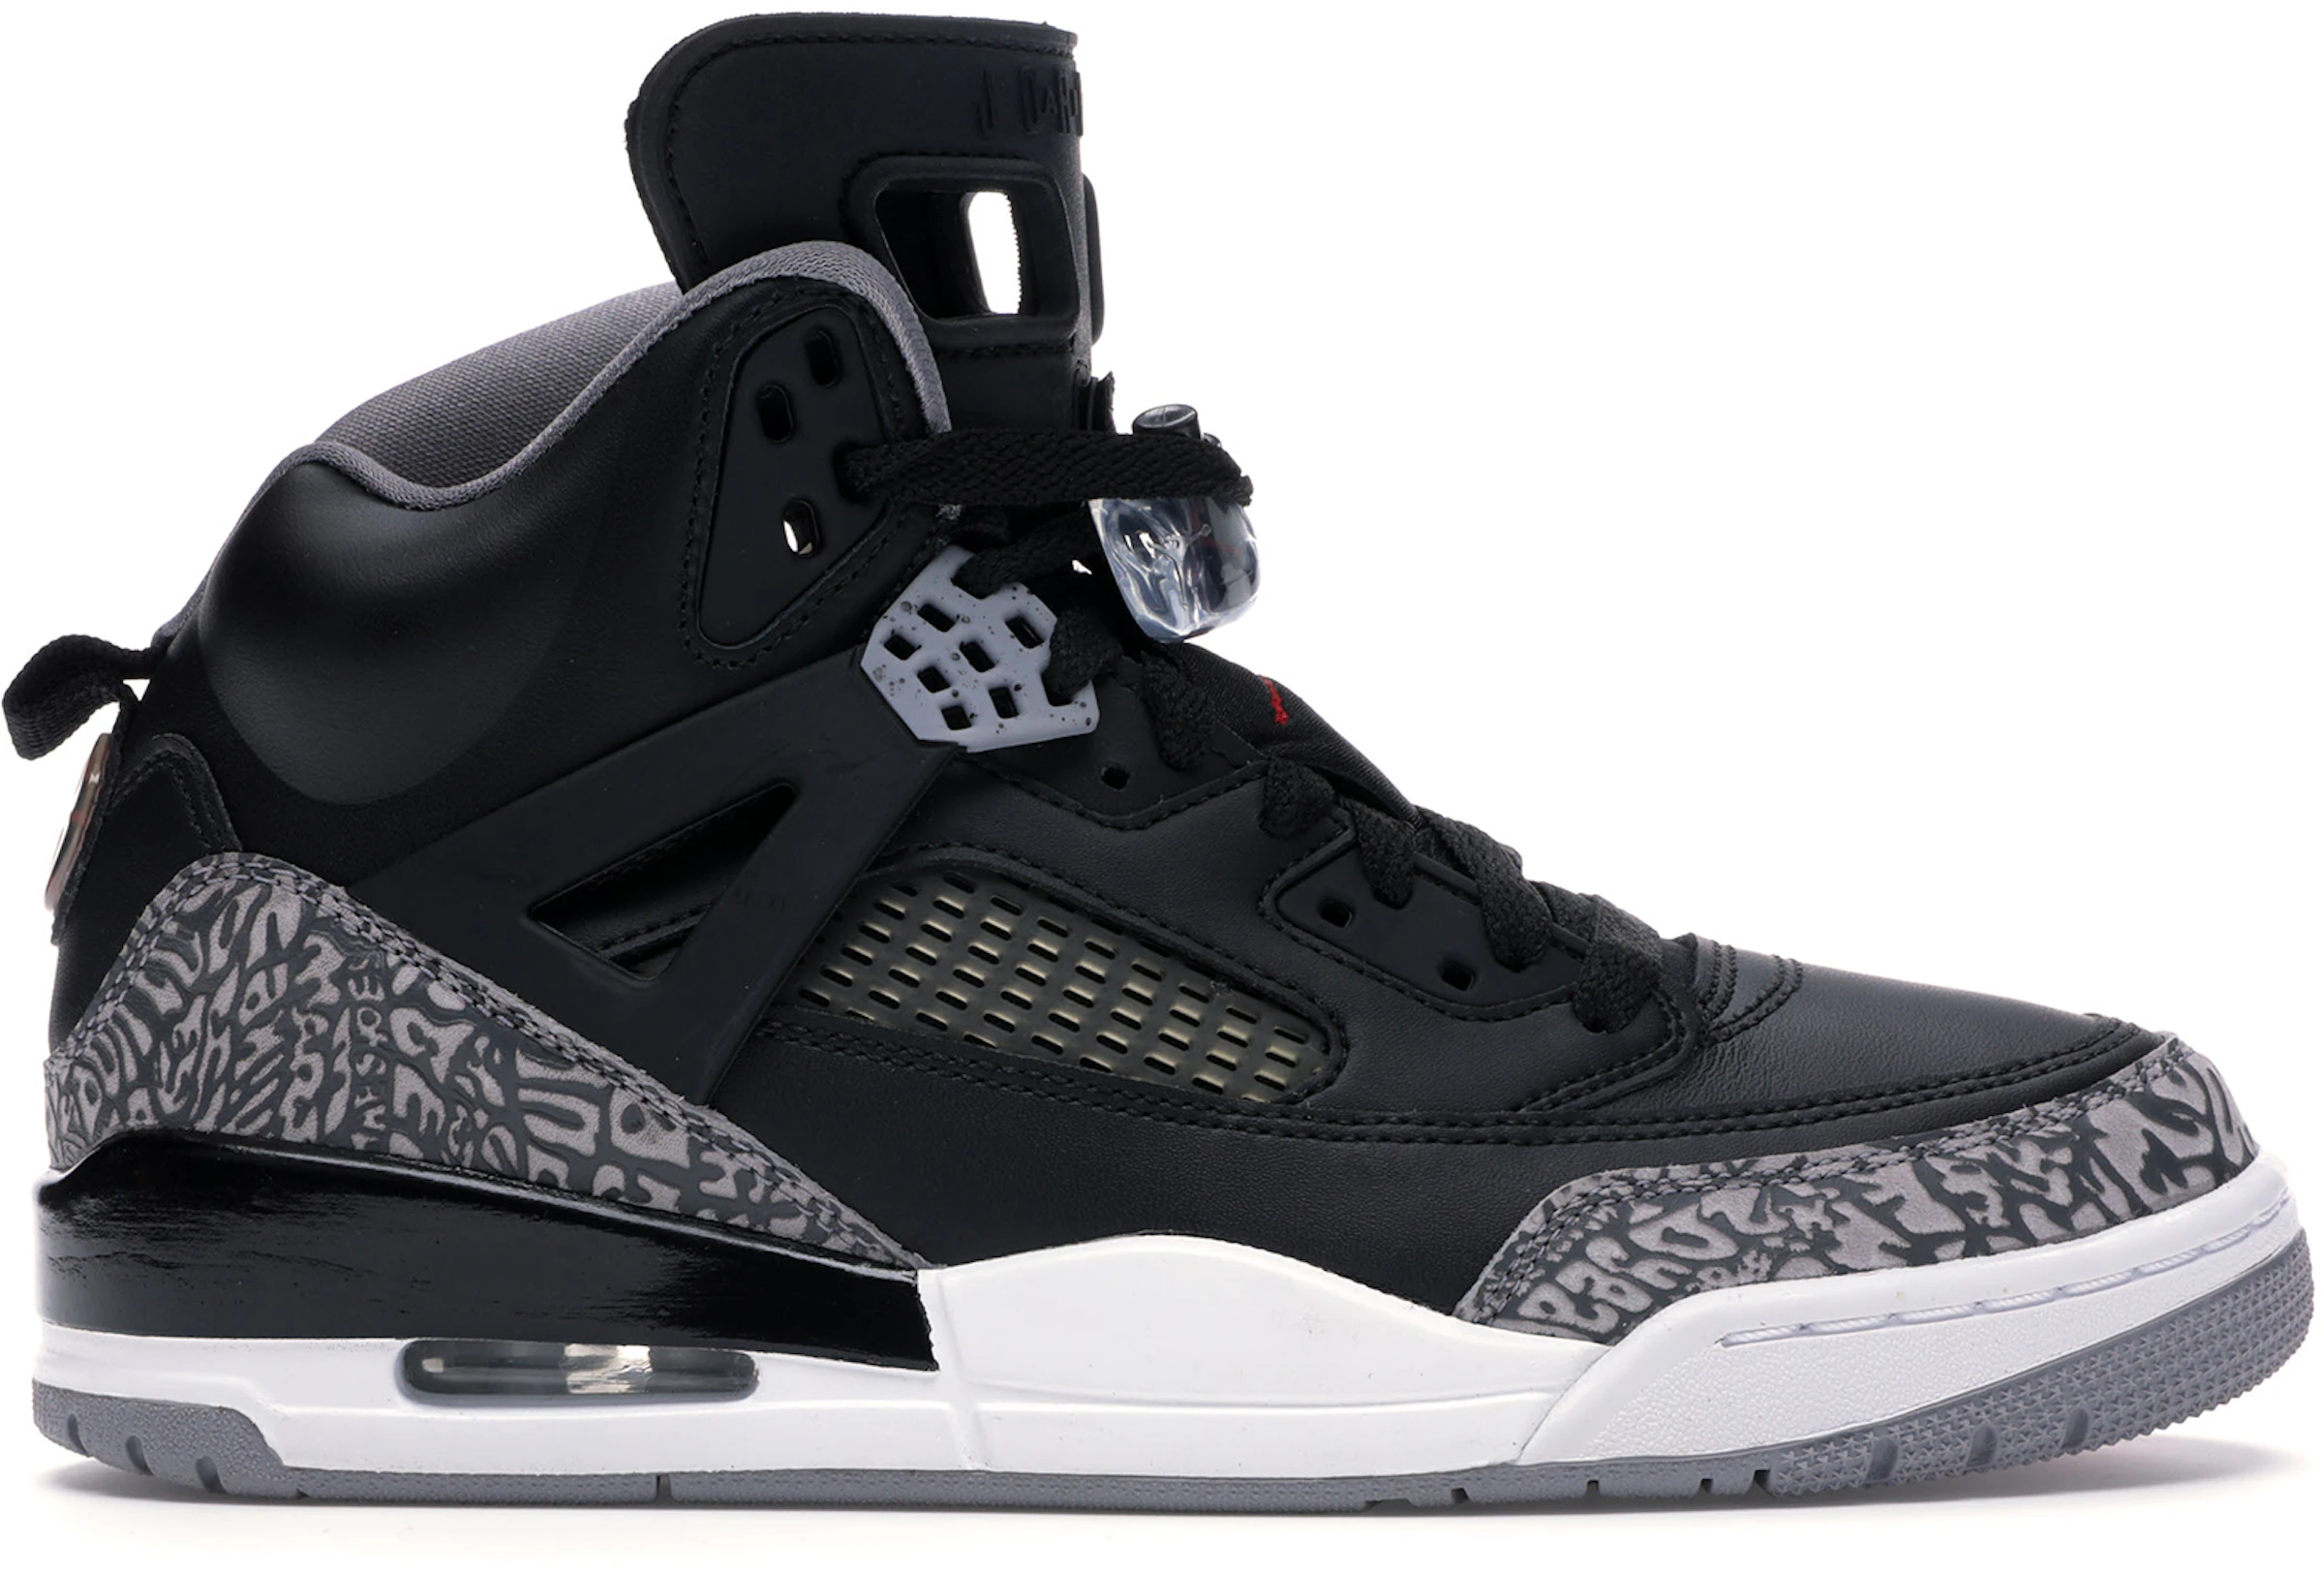 Compra Air Jordan Spizike Calzado y sneakers nuevos StockX